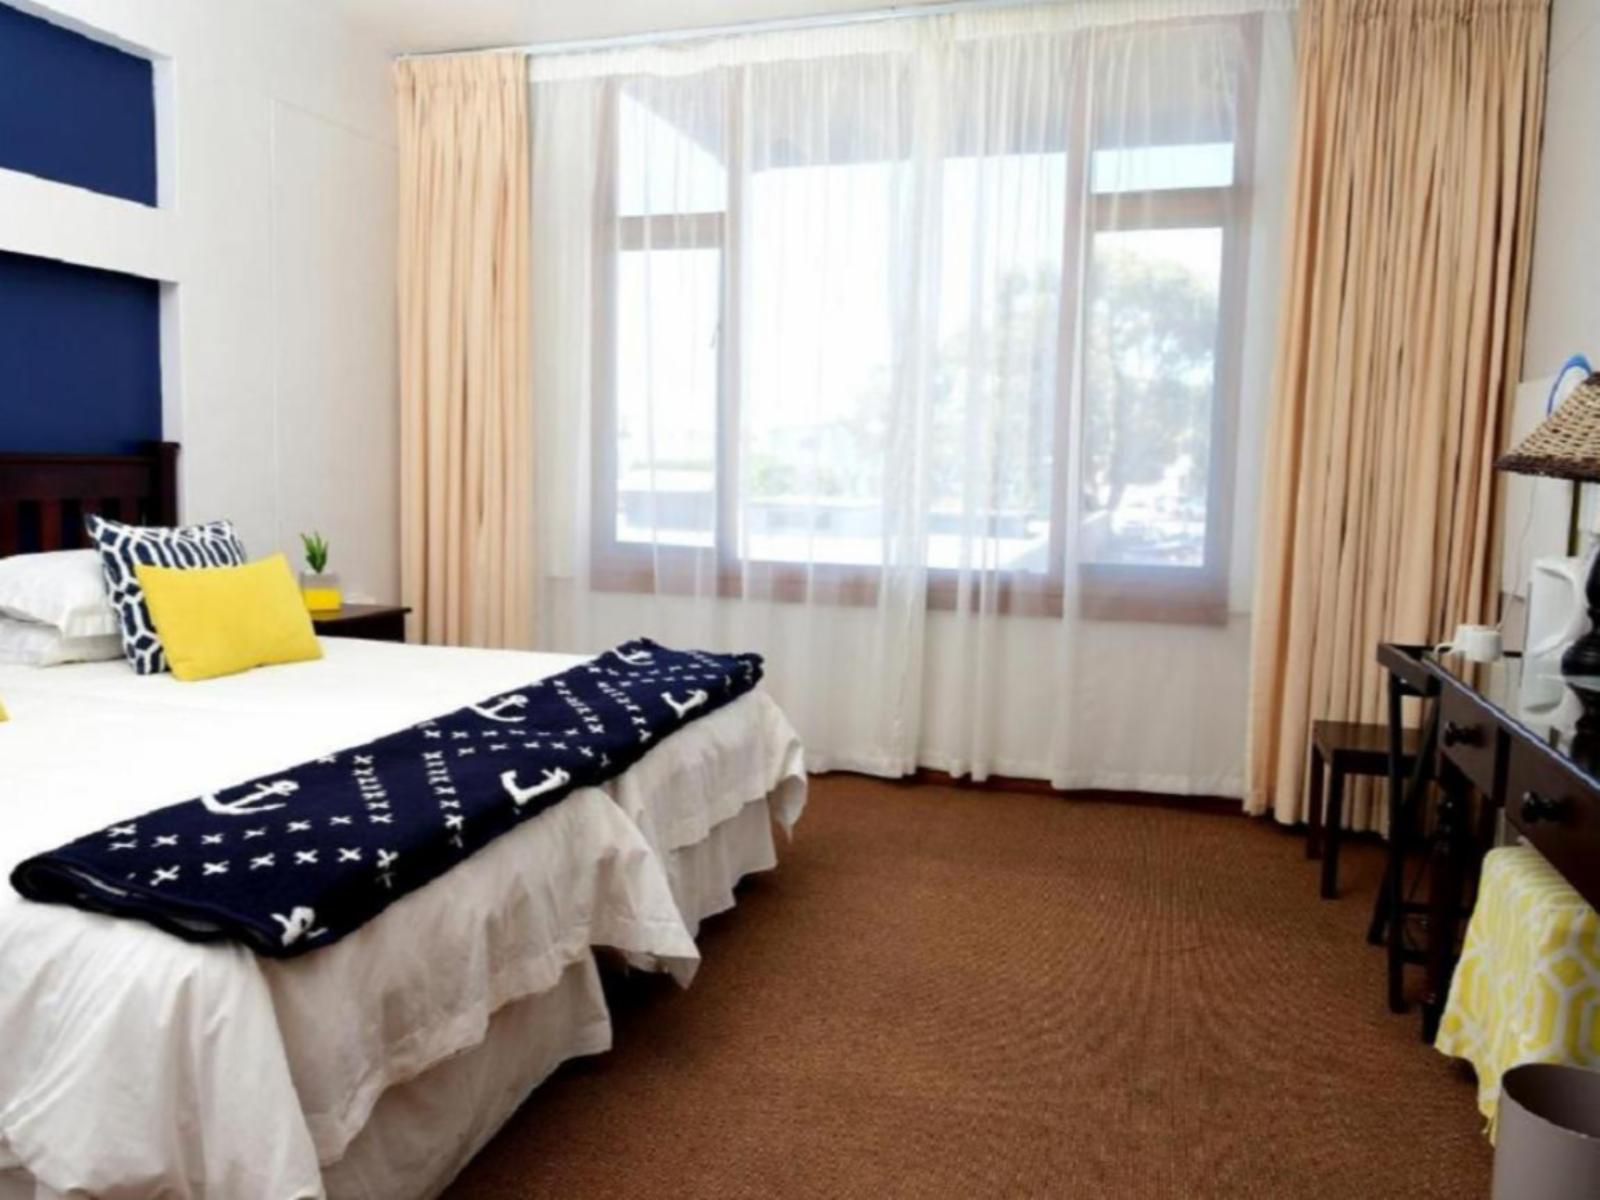 Hoedjiesbaai Hotel Saldanha Western Cape South Africa Bedroom